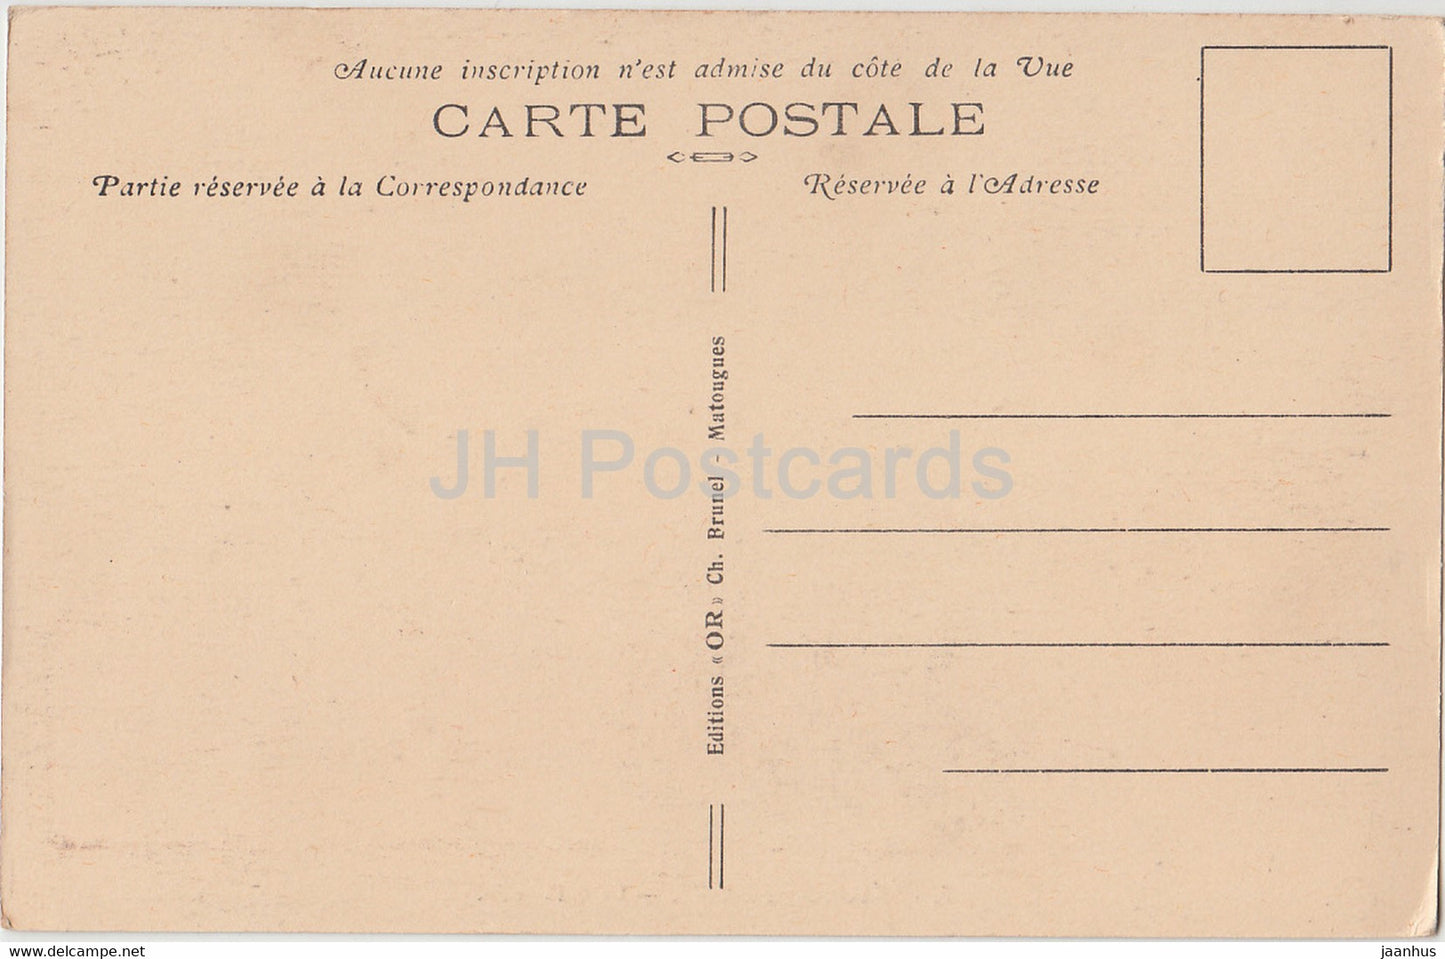 Chalons sur Marne - La Cathédrale - cathédrale - 3 - carte postale ancienne - France - inutilisée